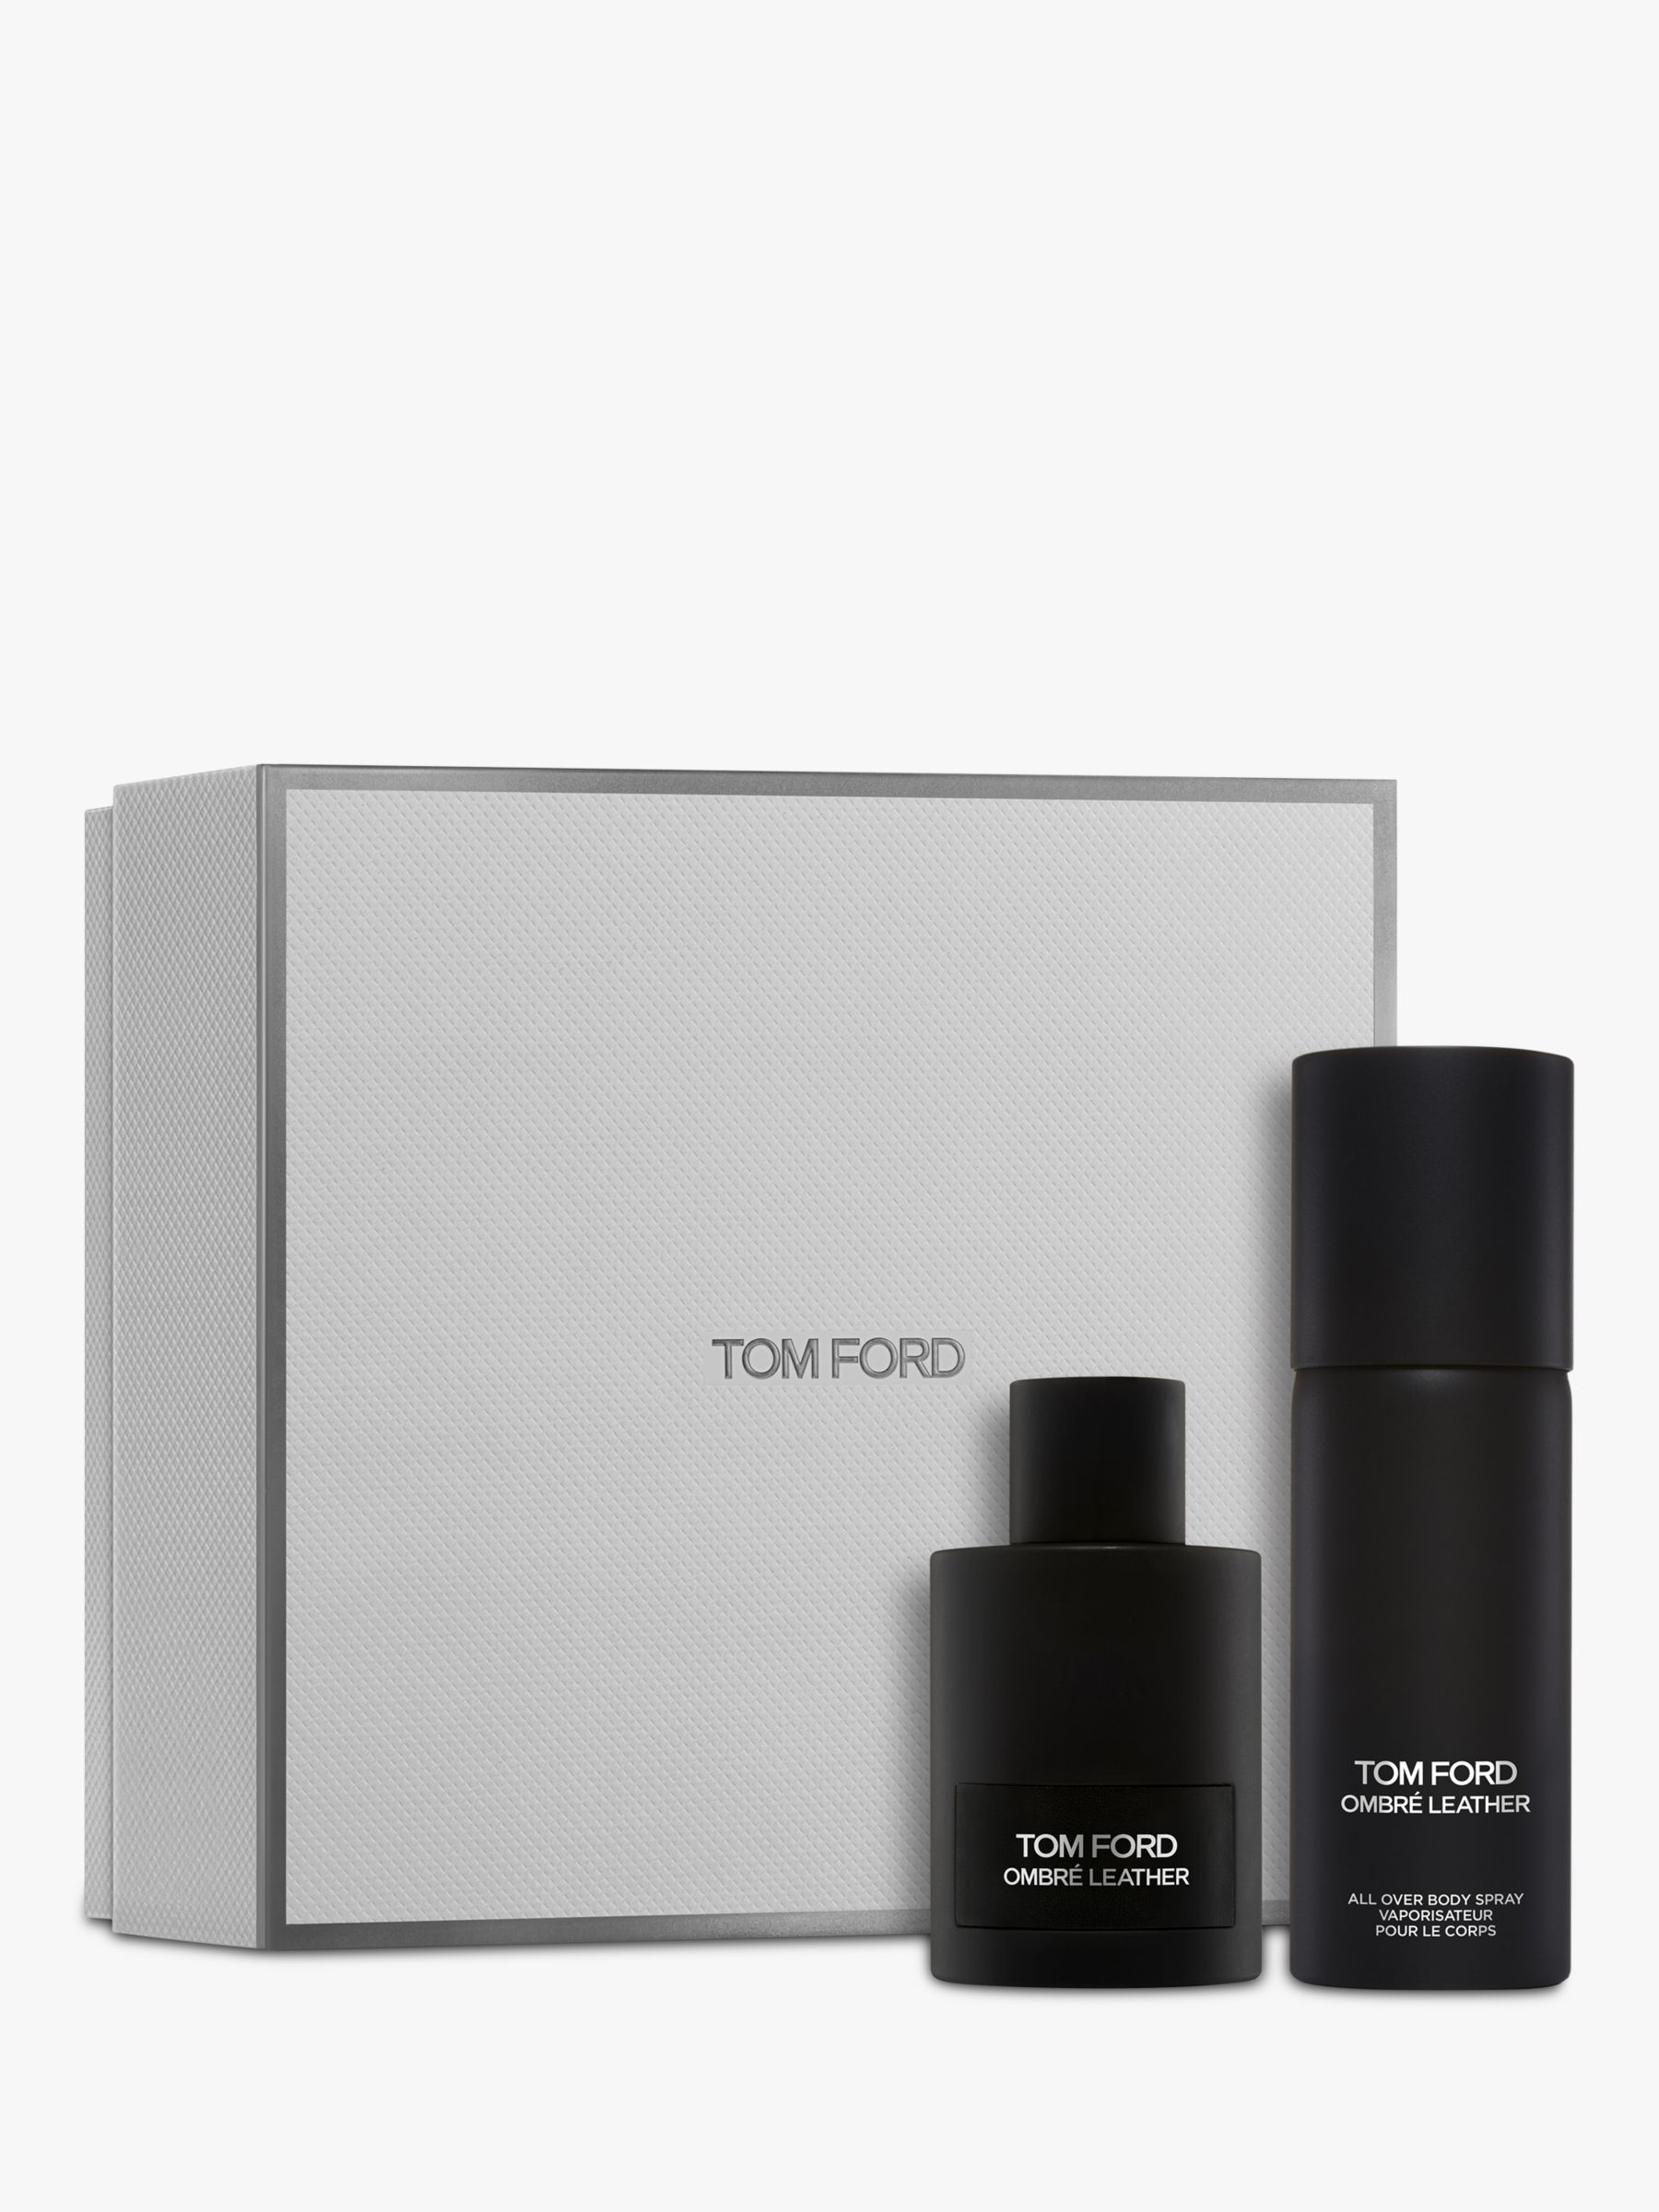 TOM FORD Ombré Leather Eau de Parfum 100ml Fragrance Gift Set